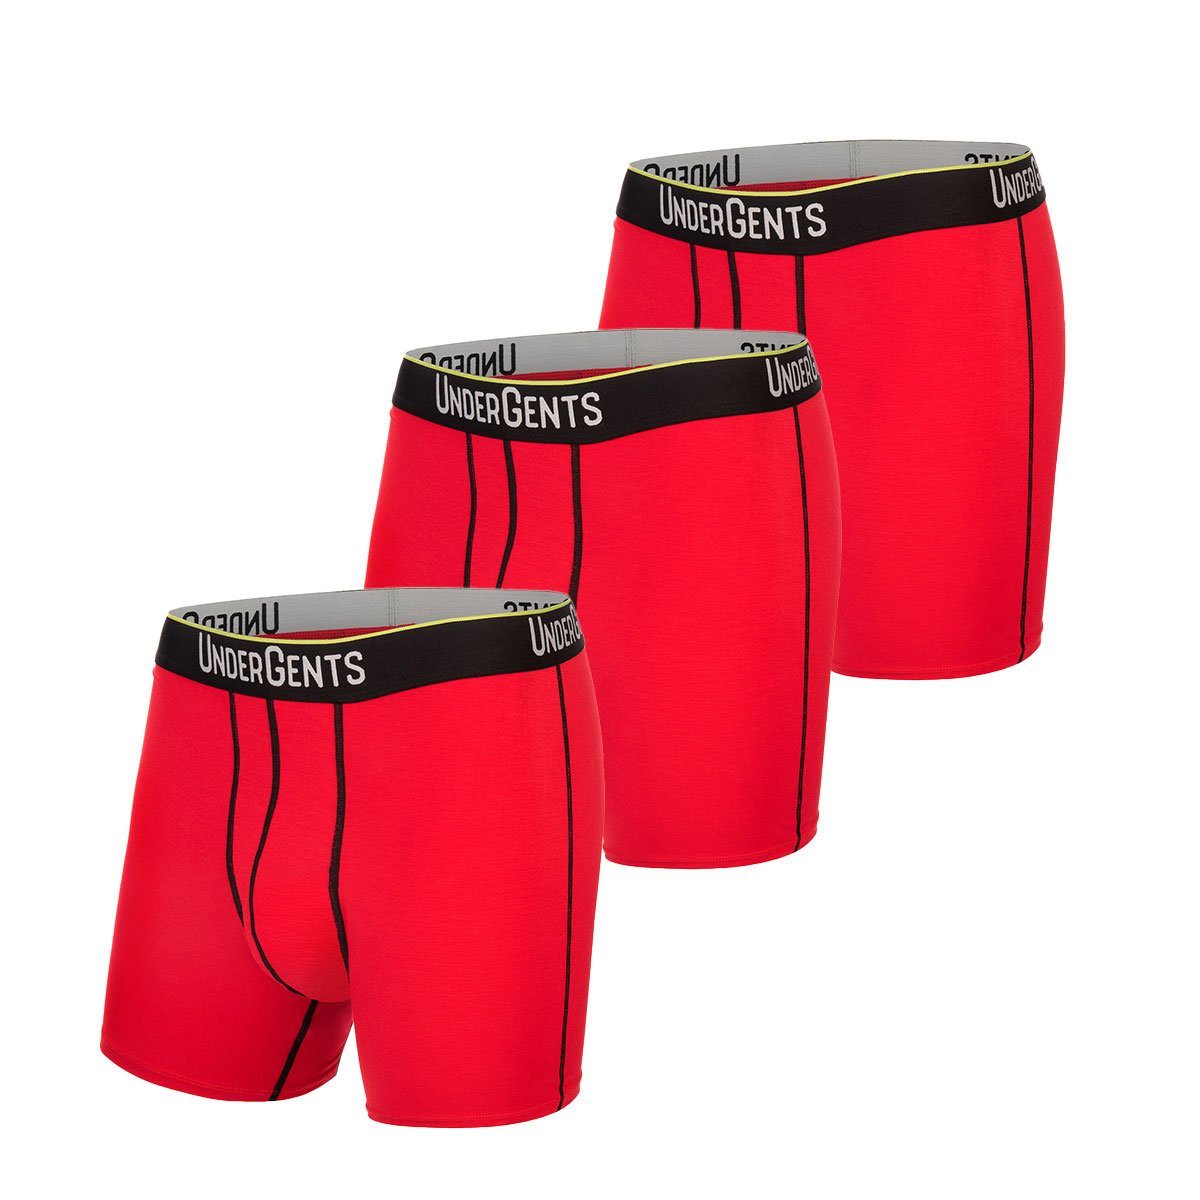 3-Pack UnderGents Men's 4.5" Boxer Brief (Flyless) Underwear: Ultra